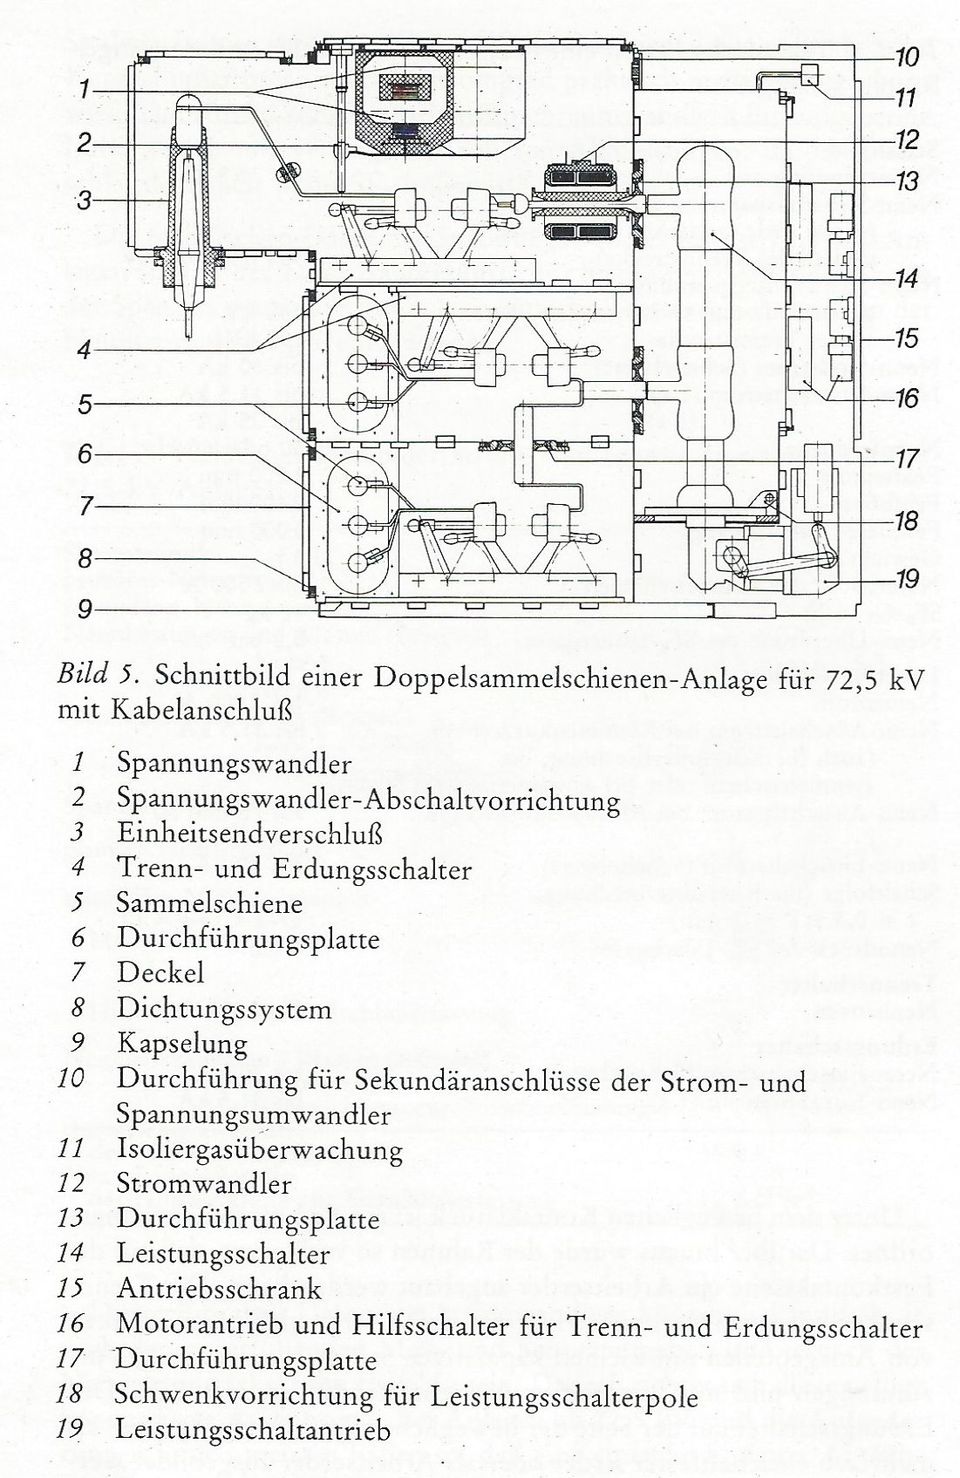 Bild 5: Schnittbild einer Doppelsammelschienen-Anlage für 72,5 kV mit Kabelanschluß